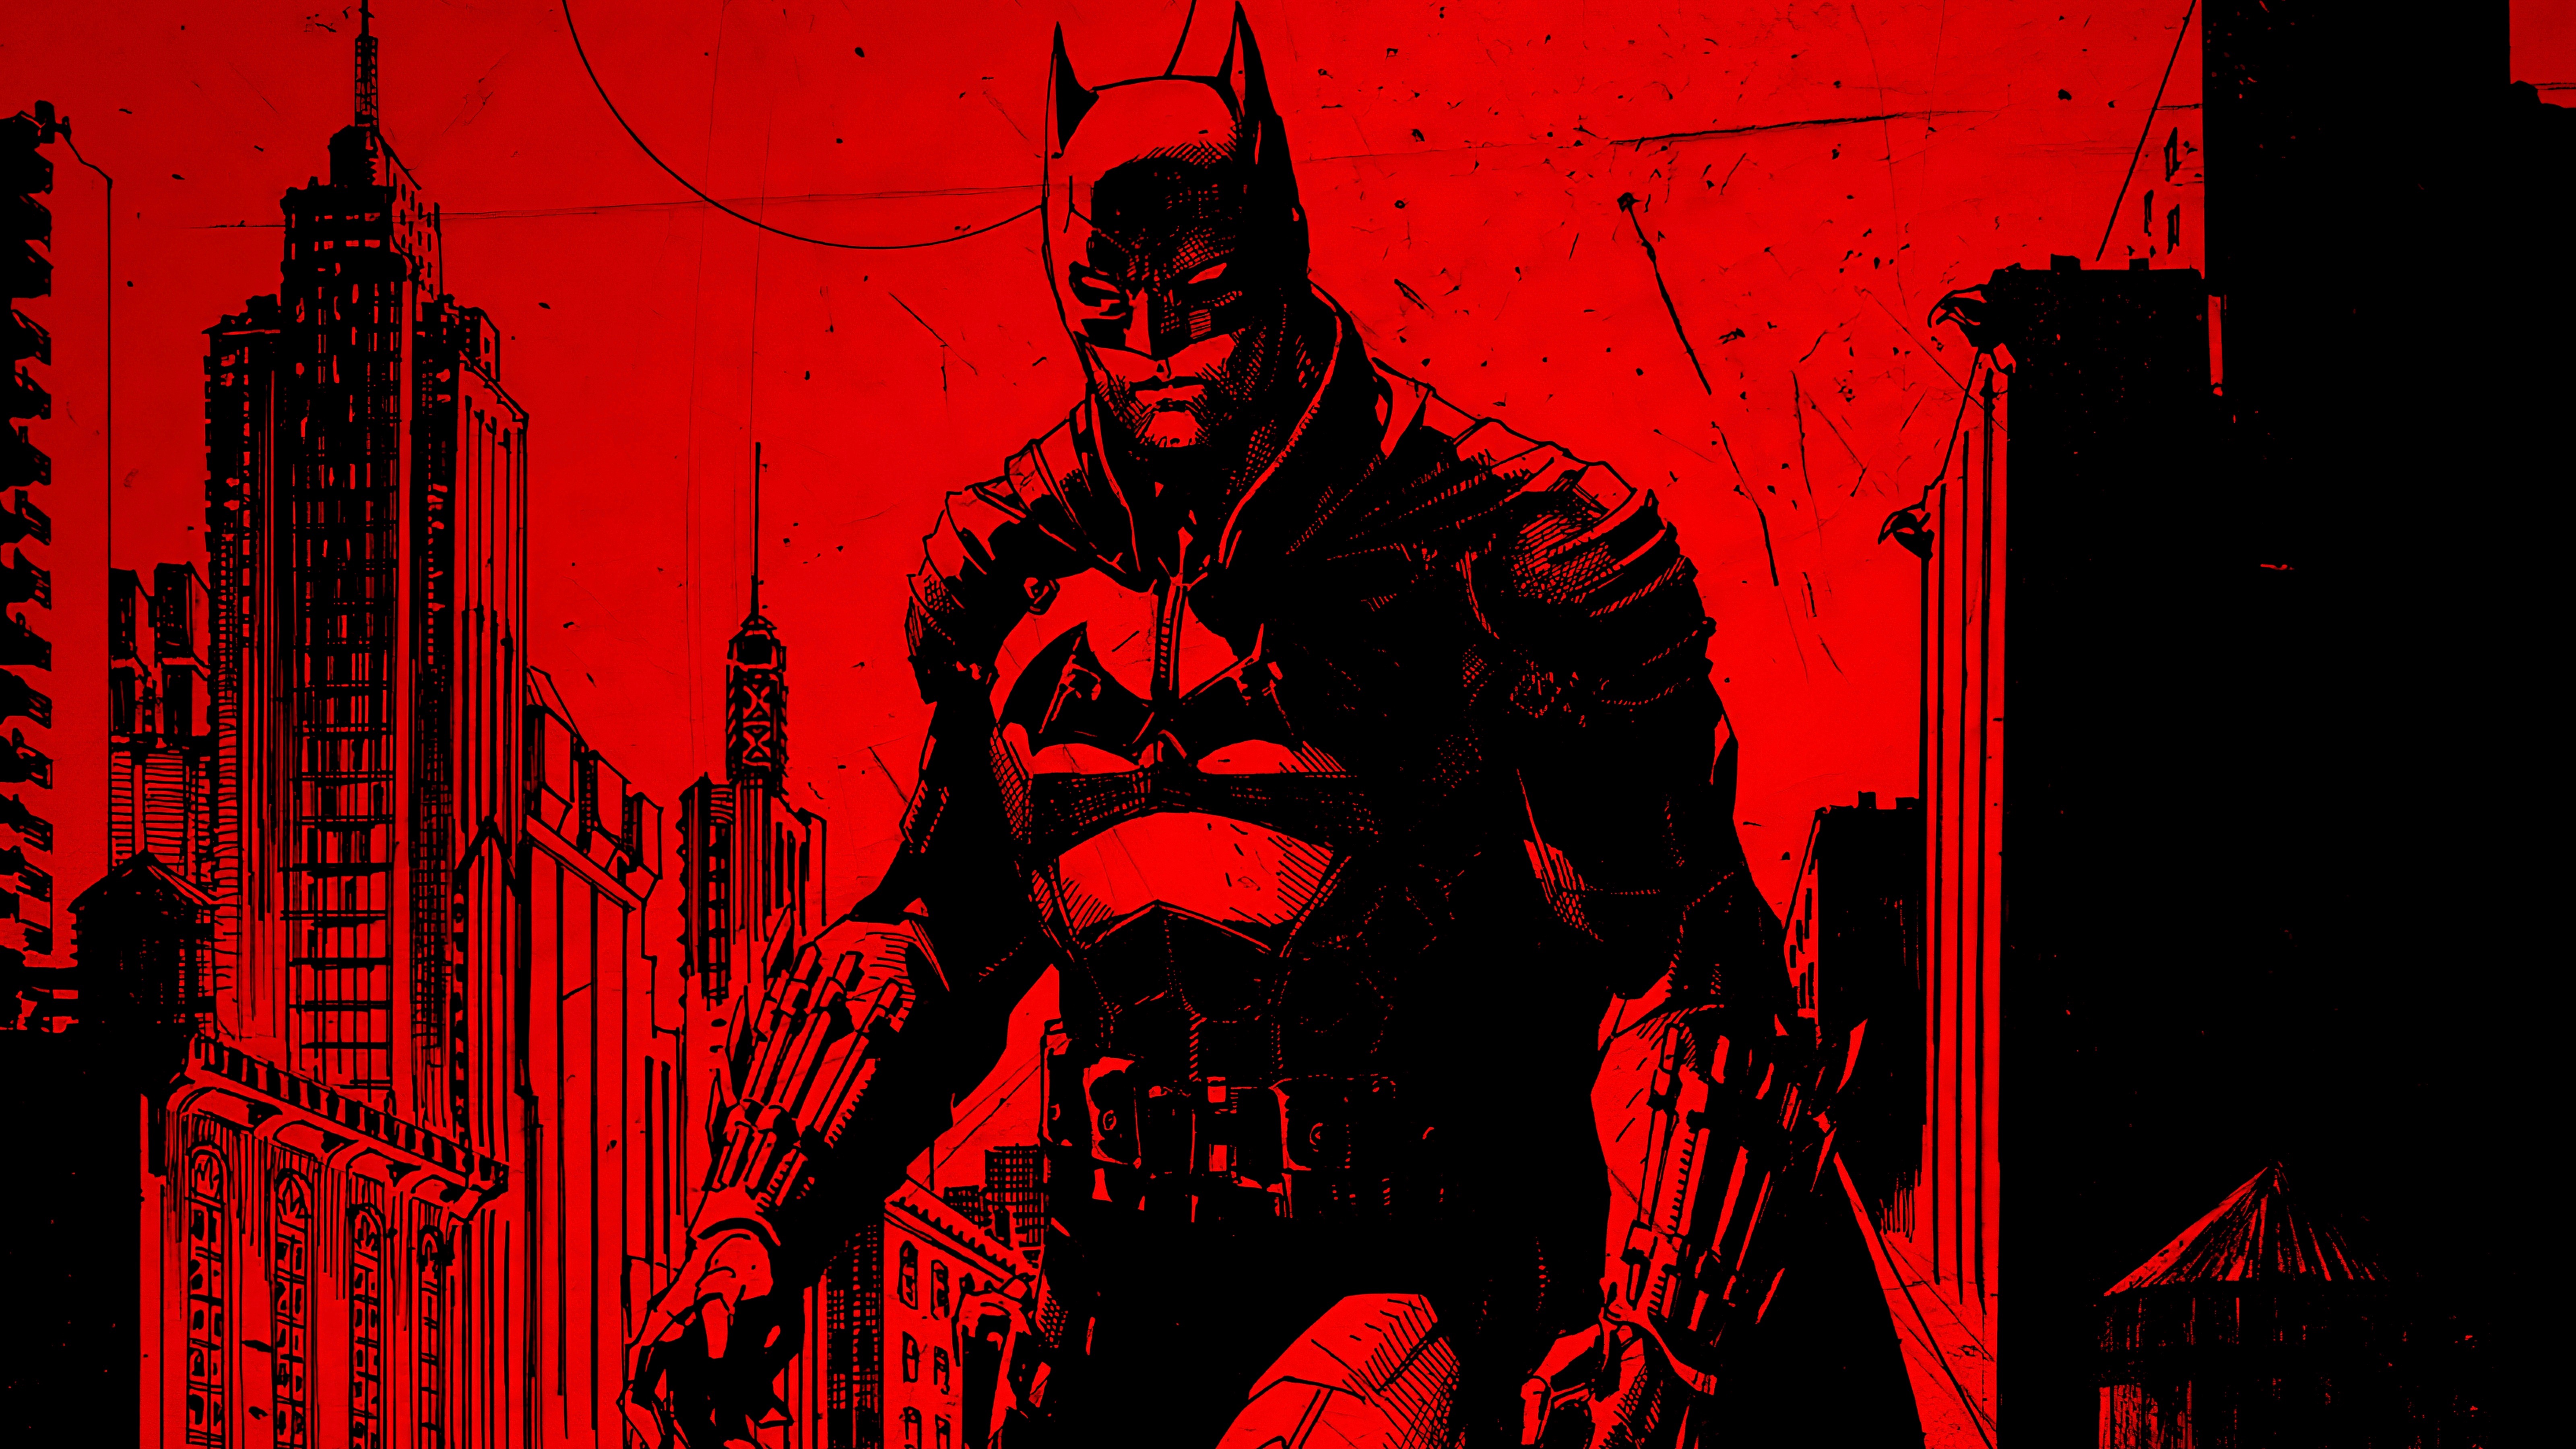 Скачать обои бесплатно Кино, Бэтмен, Брюс Уэйн картинка на рабочий стол ПК